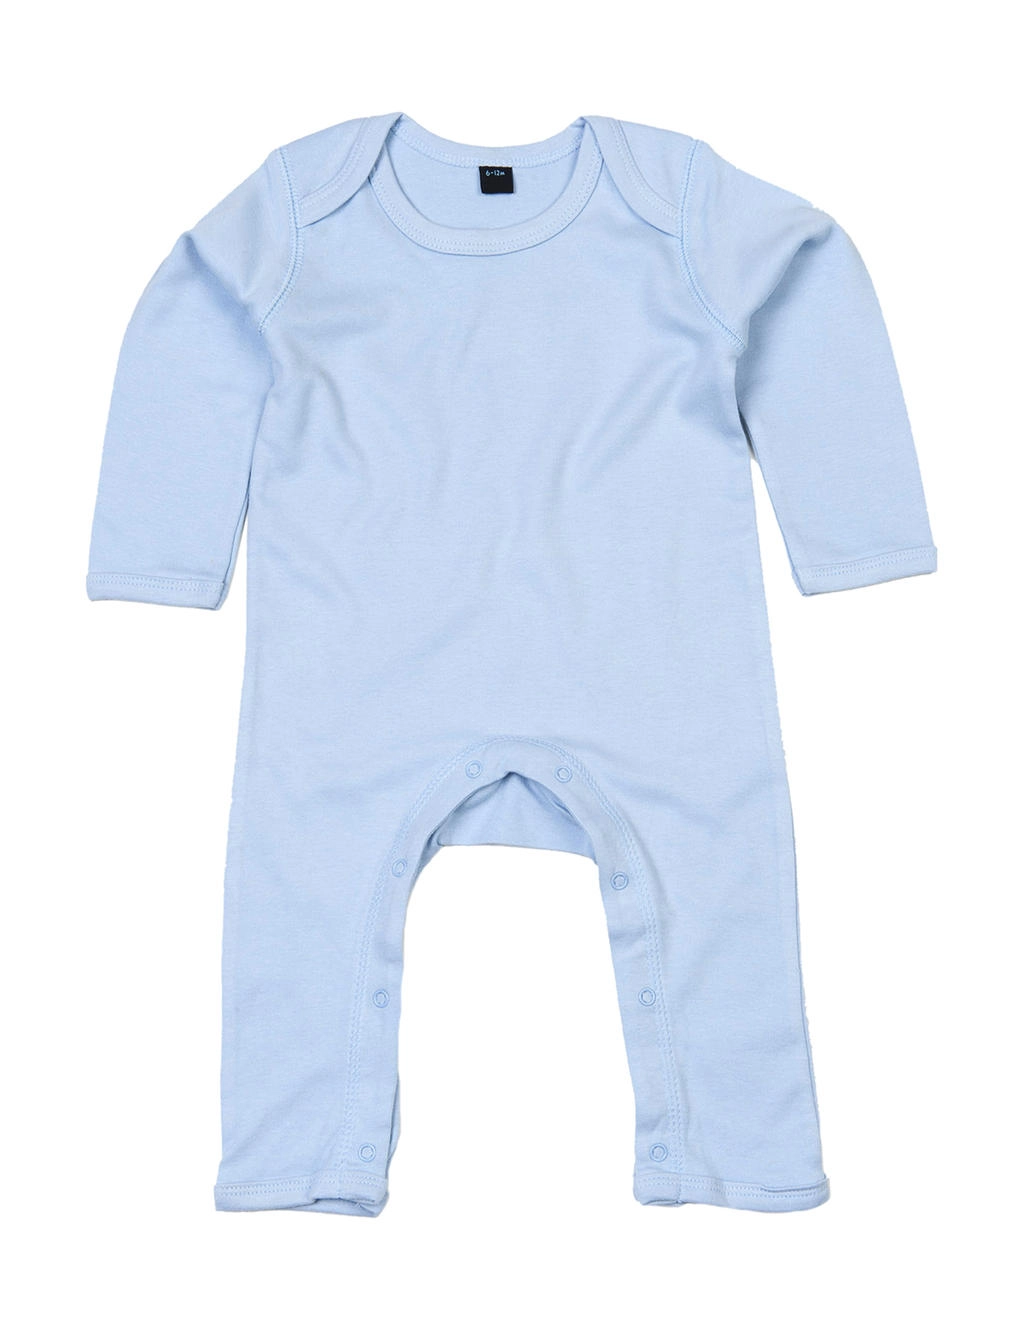 Baby Rompasuit zum Besticken und Bedrucken in der Farbe Dusty Blue mit Ihren Logo, Schriftzug oder Motiv.